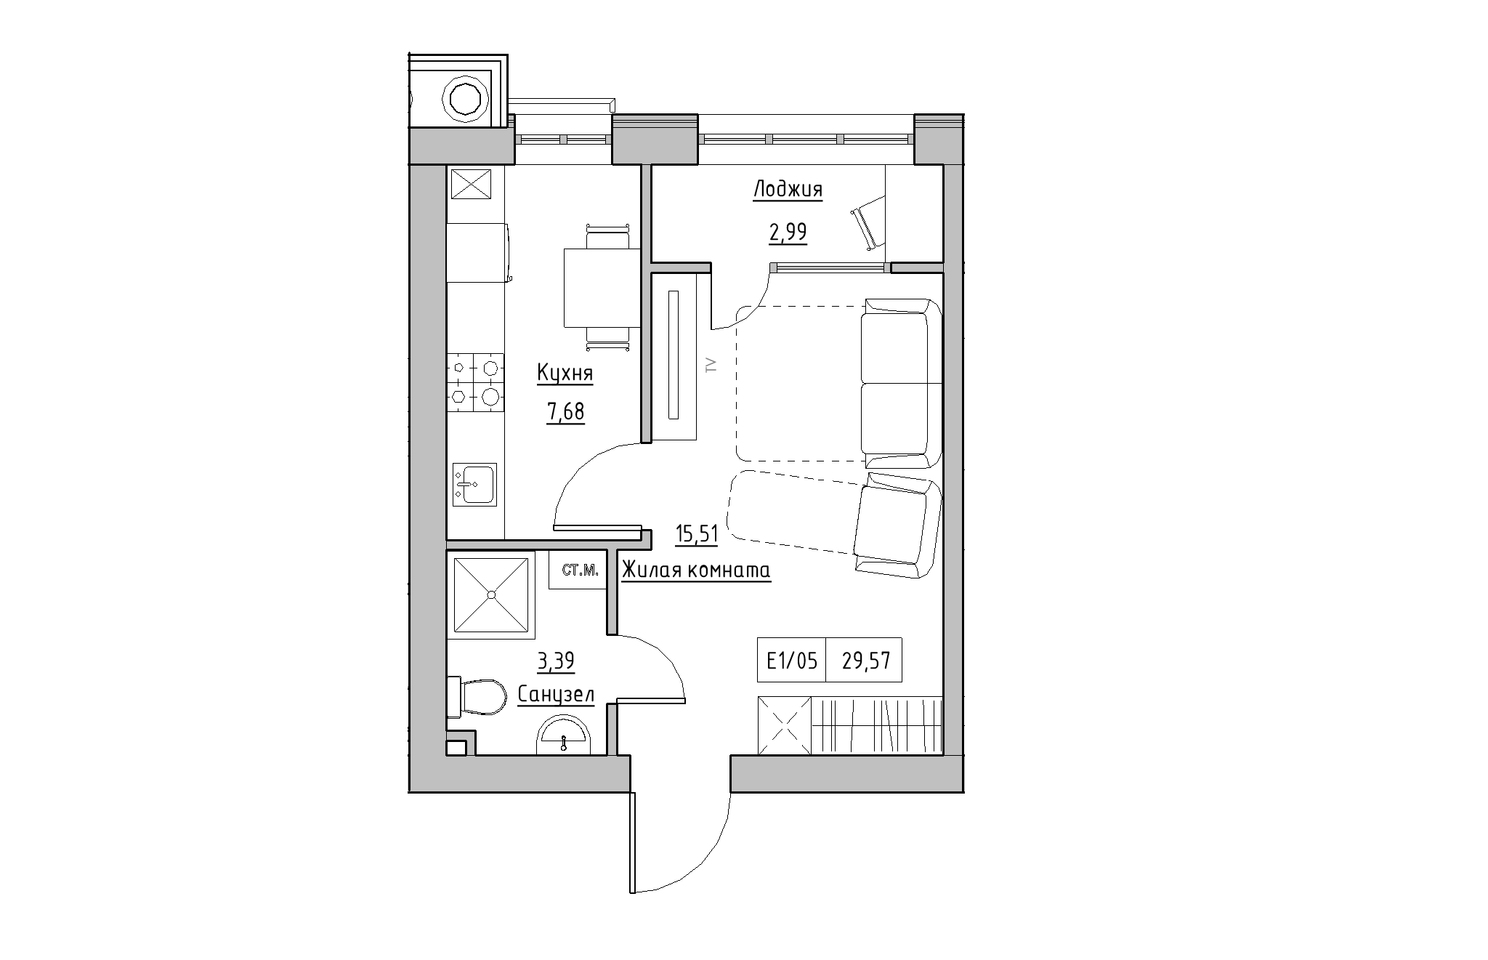 Планировка 1-к квартира площей 29.57м2, KS-010-01/0006.